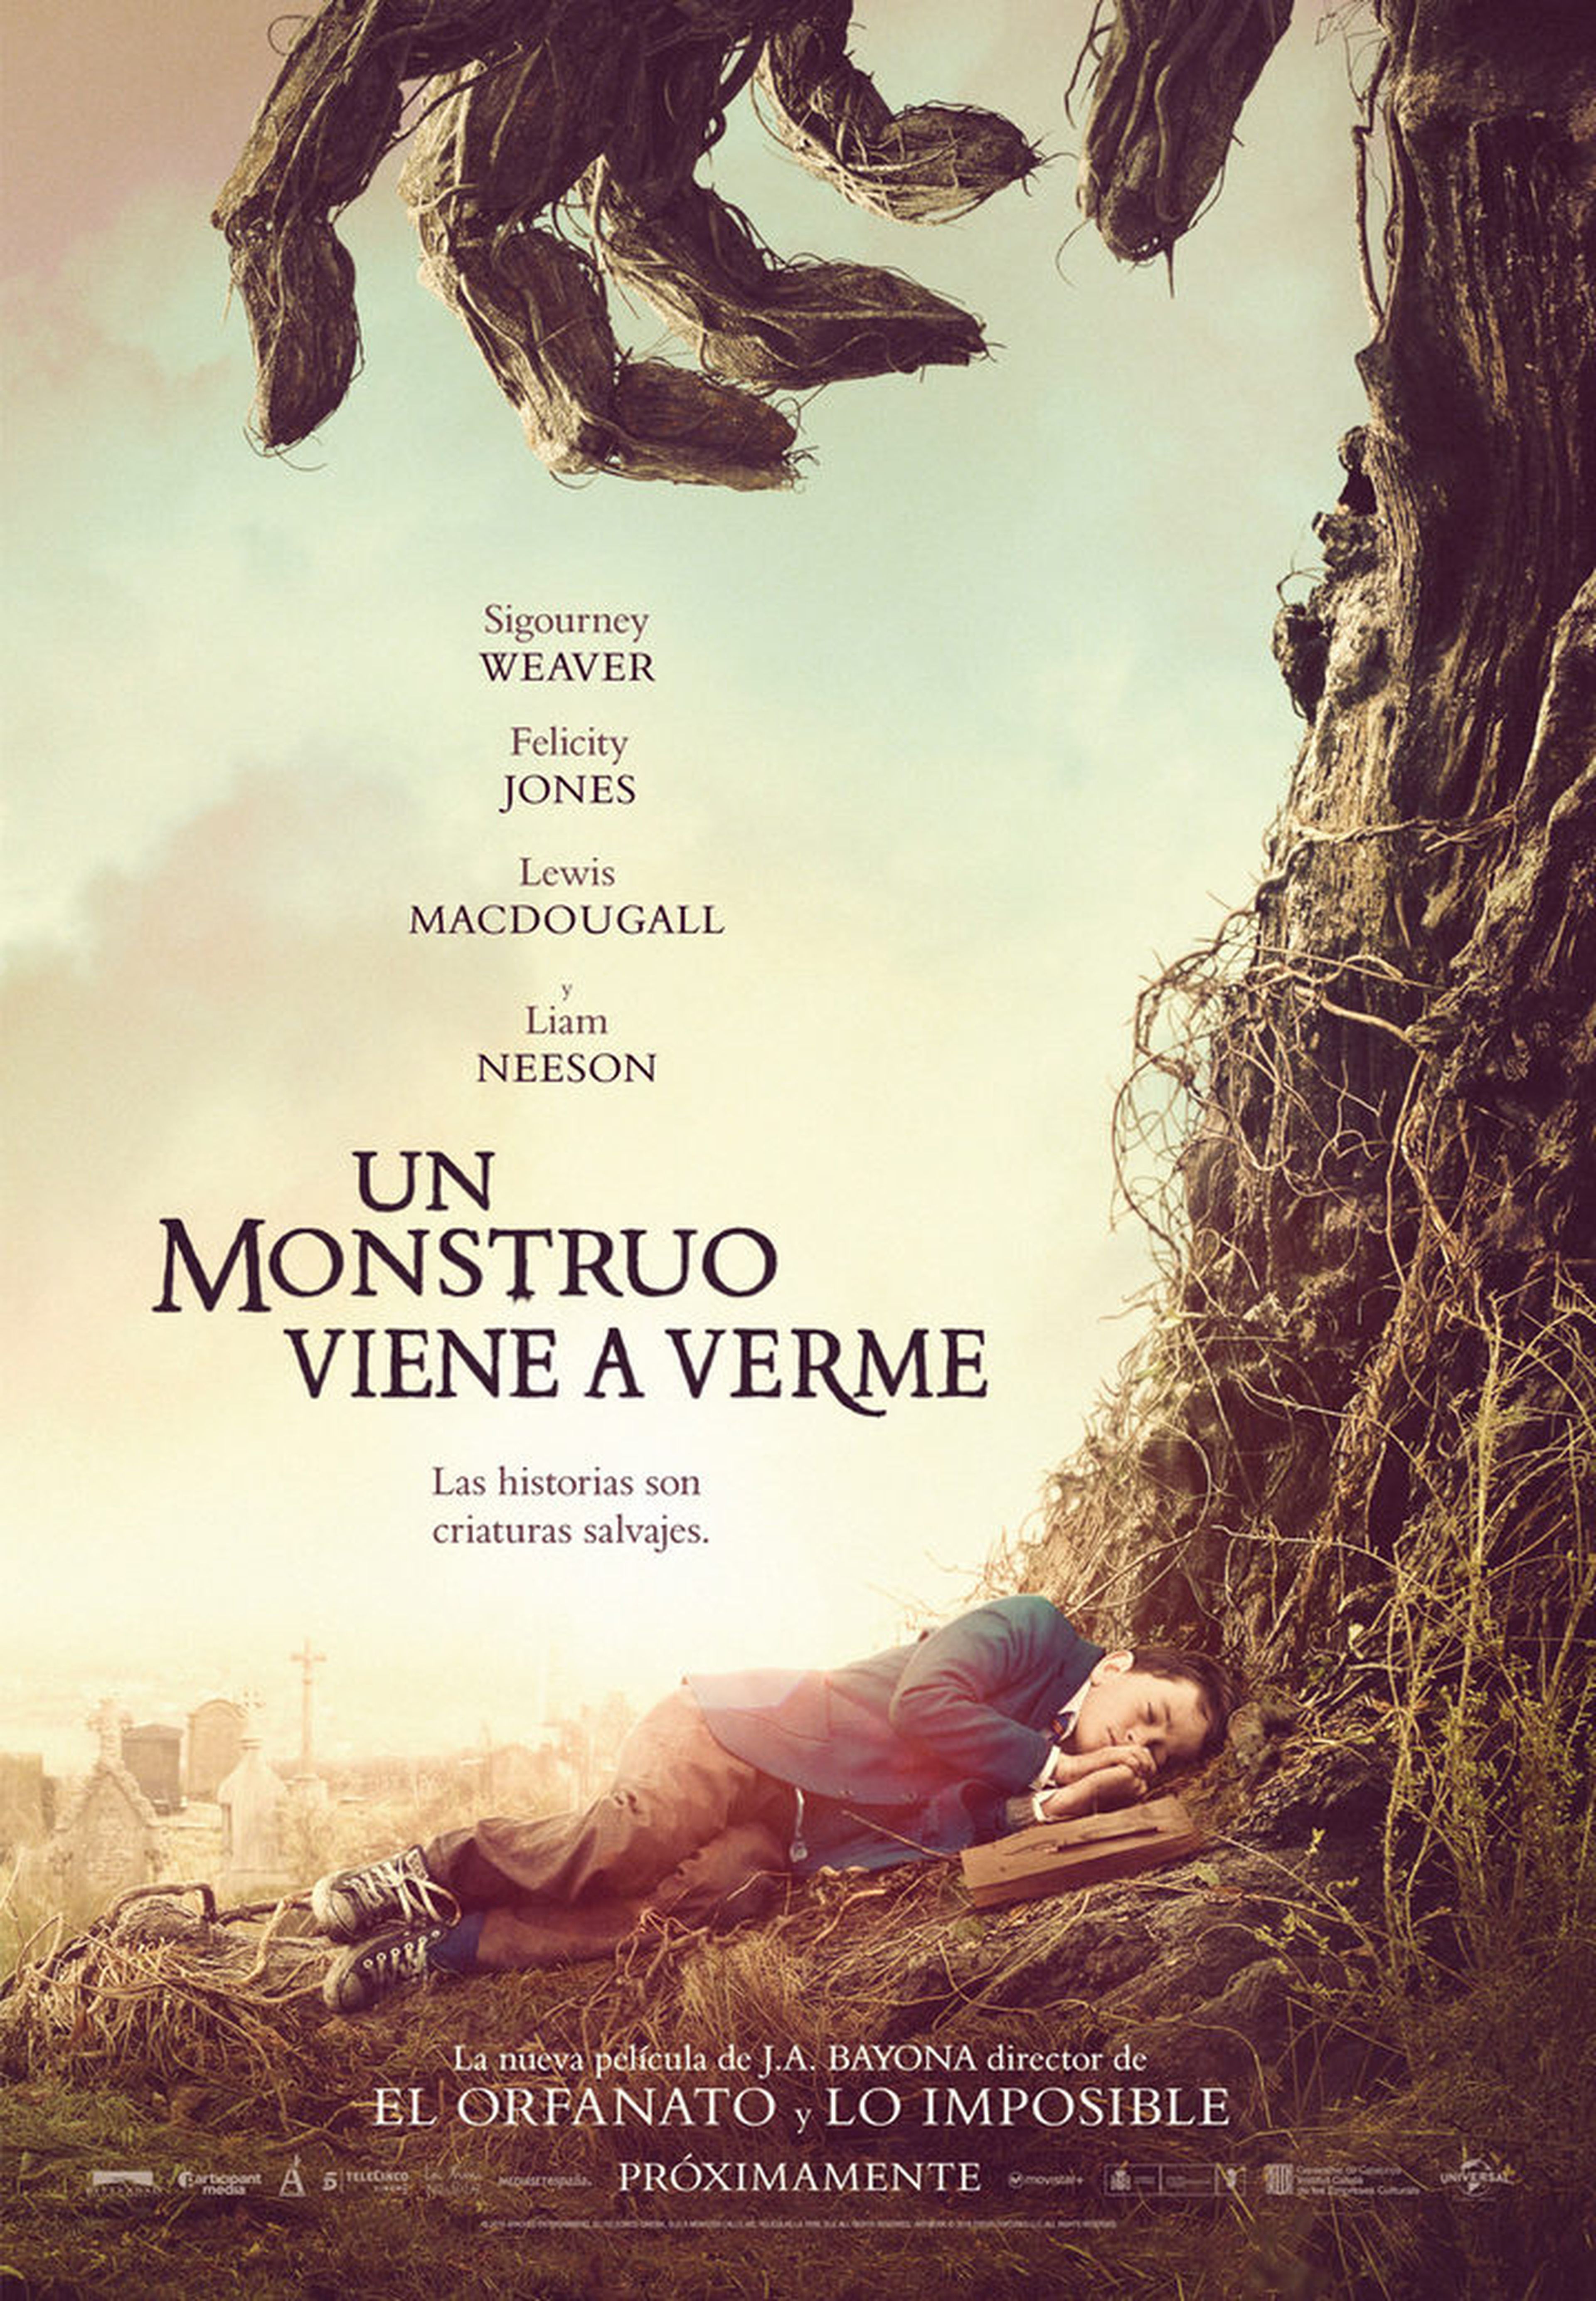 Un monstruo viene a verme – Tráiler y póster oficial de la película de J. A. Bayona